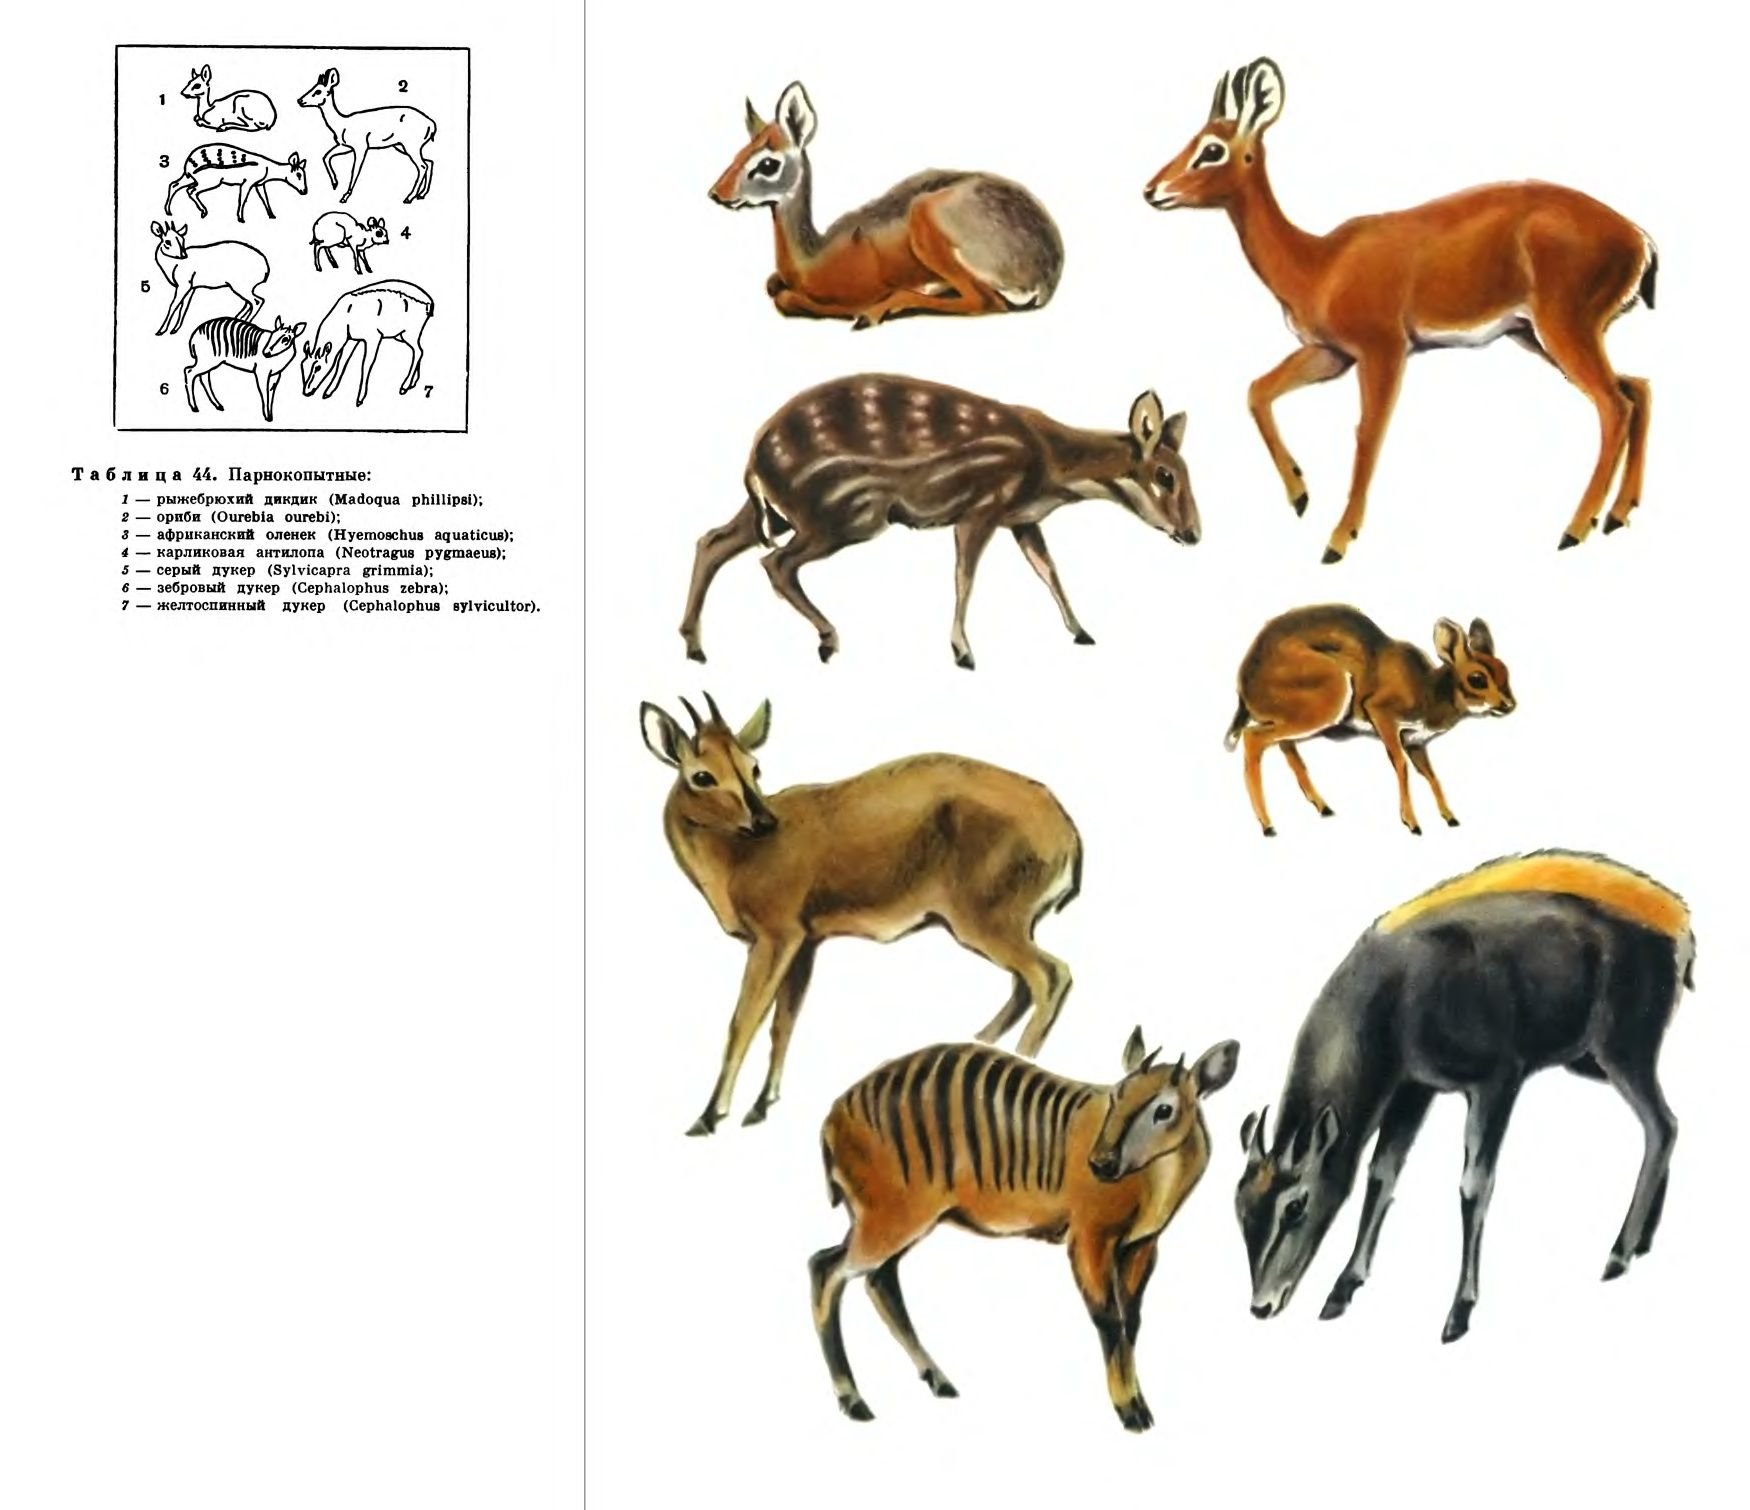 Жвачные примеры. Отряд парнокопытные жвачные. Карликовая антилопа (Neotragus pygmaeus). Парнокопытные жвачные представители. Отряд копытные млекопитающие.